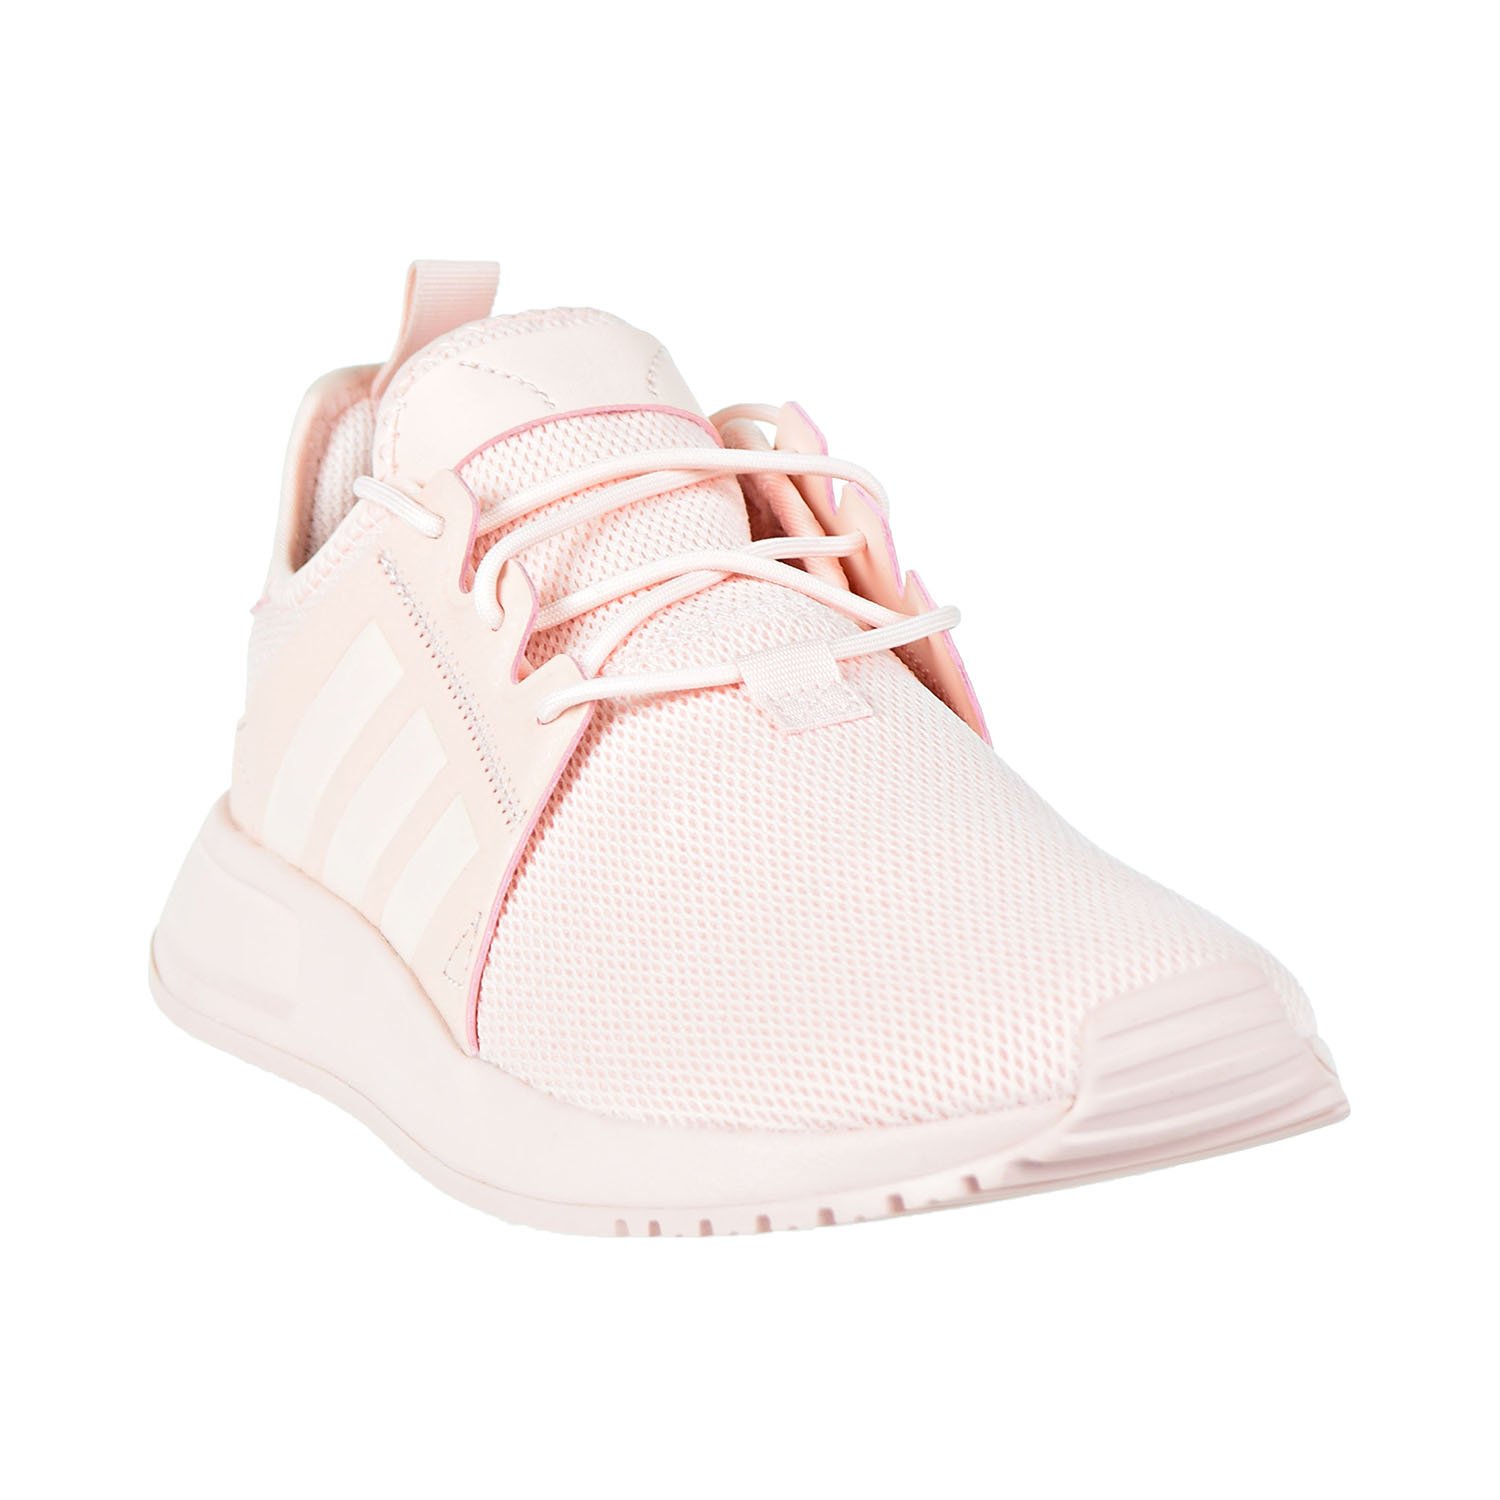 adidas x_plr ice pink